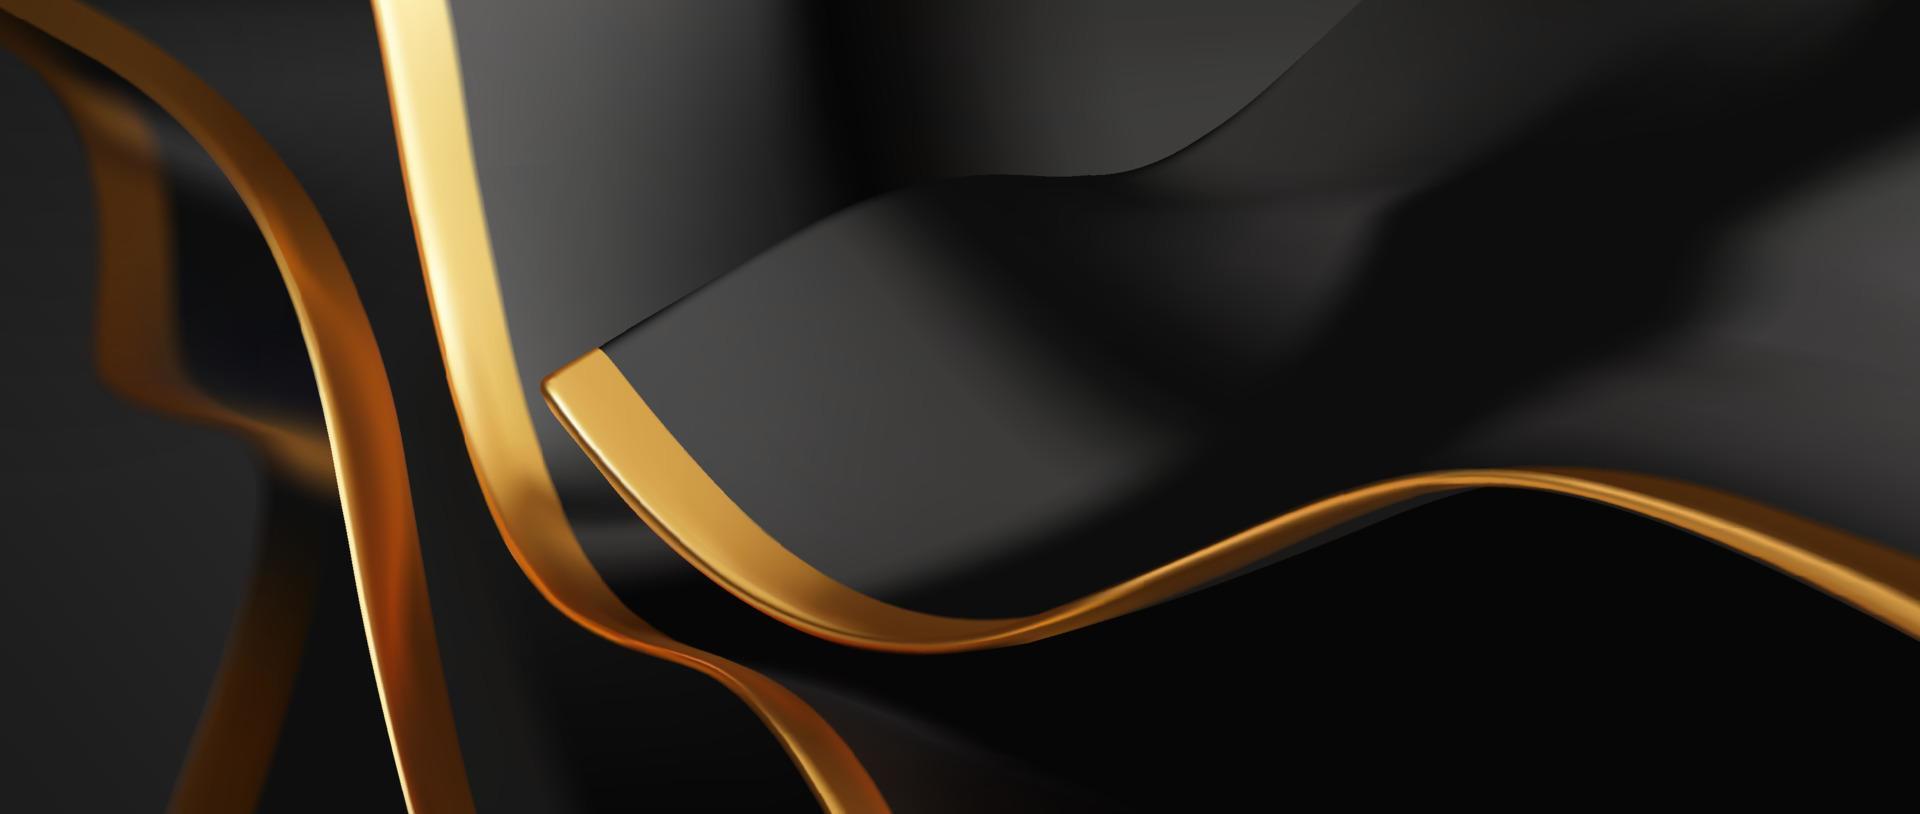 fundo de luxo ondulado preto e dourado, folha ondulada em camadas 3d ilustração de papel de parede realista vetor